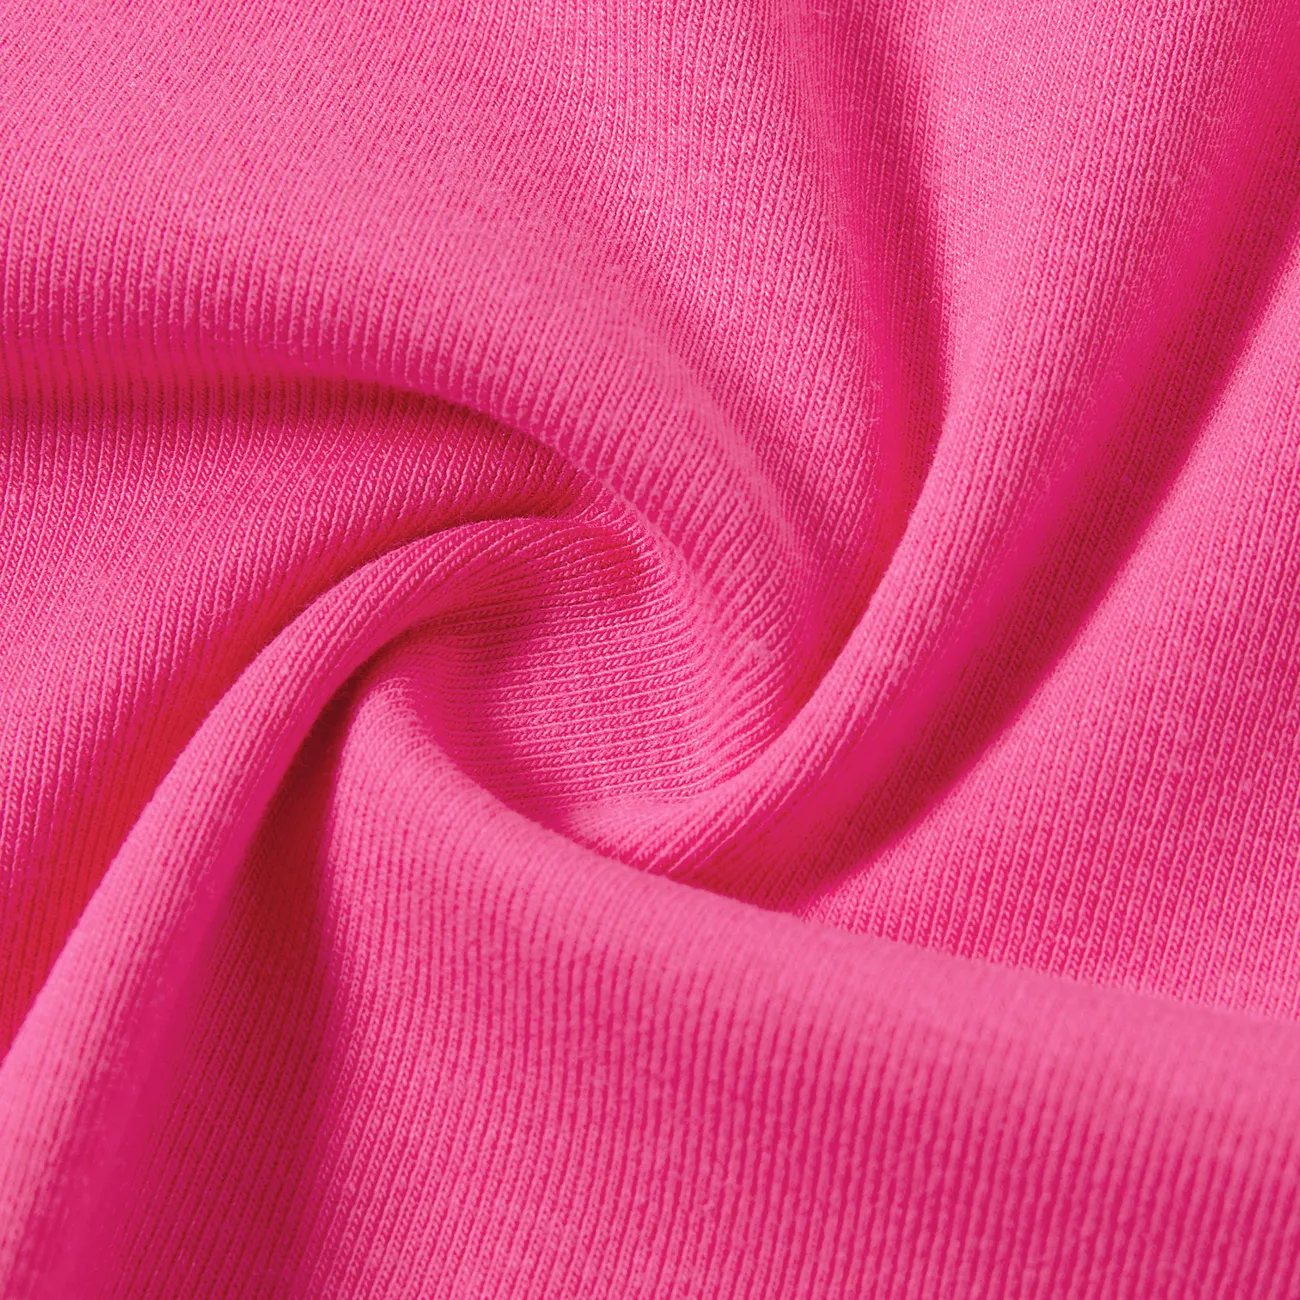 Barbie Dia da Mãe Sem mangas Tops Mãe e eu cor de rosa big image 1